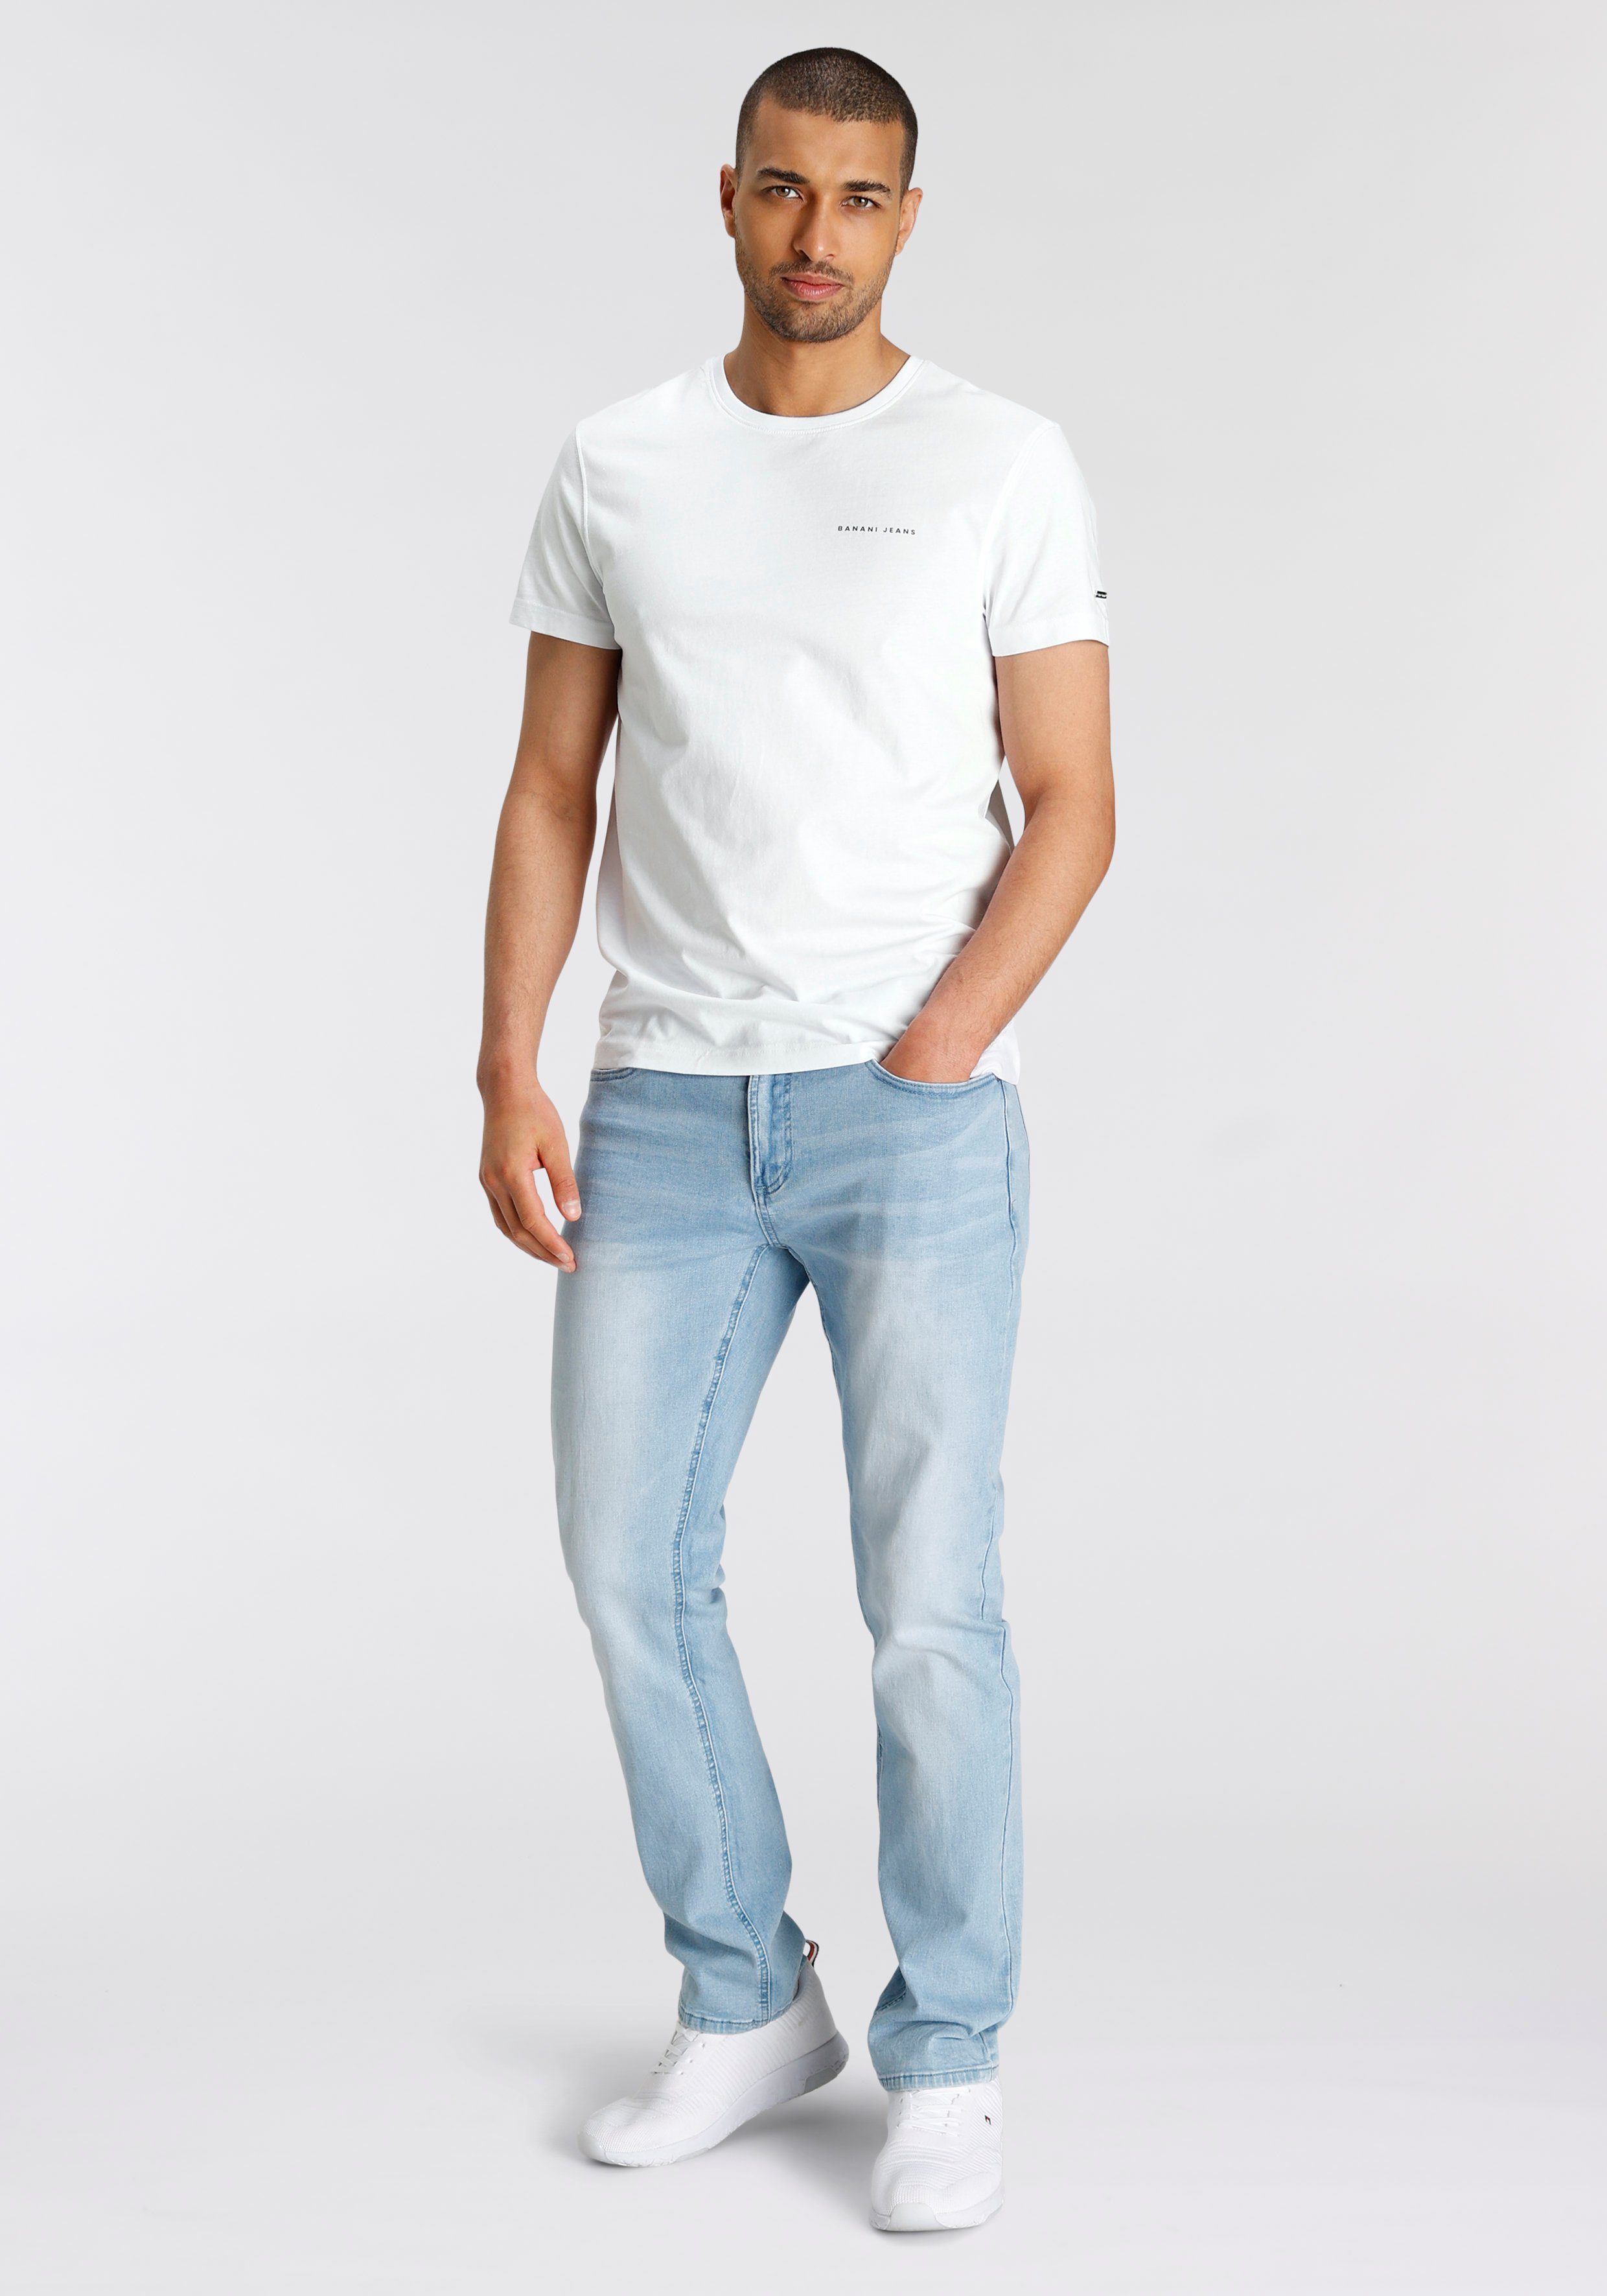 Bruno Banani mit T-Shirt coolem weiß Rückenprint